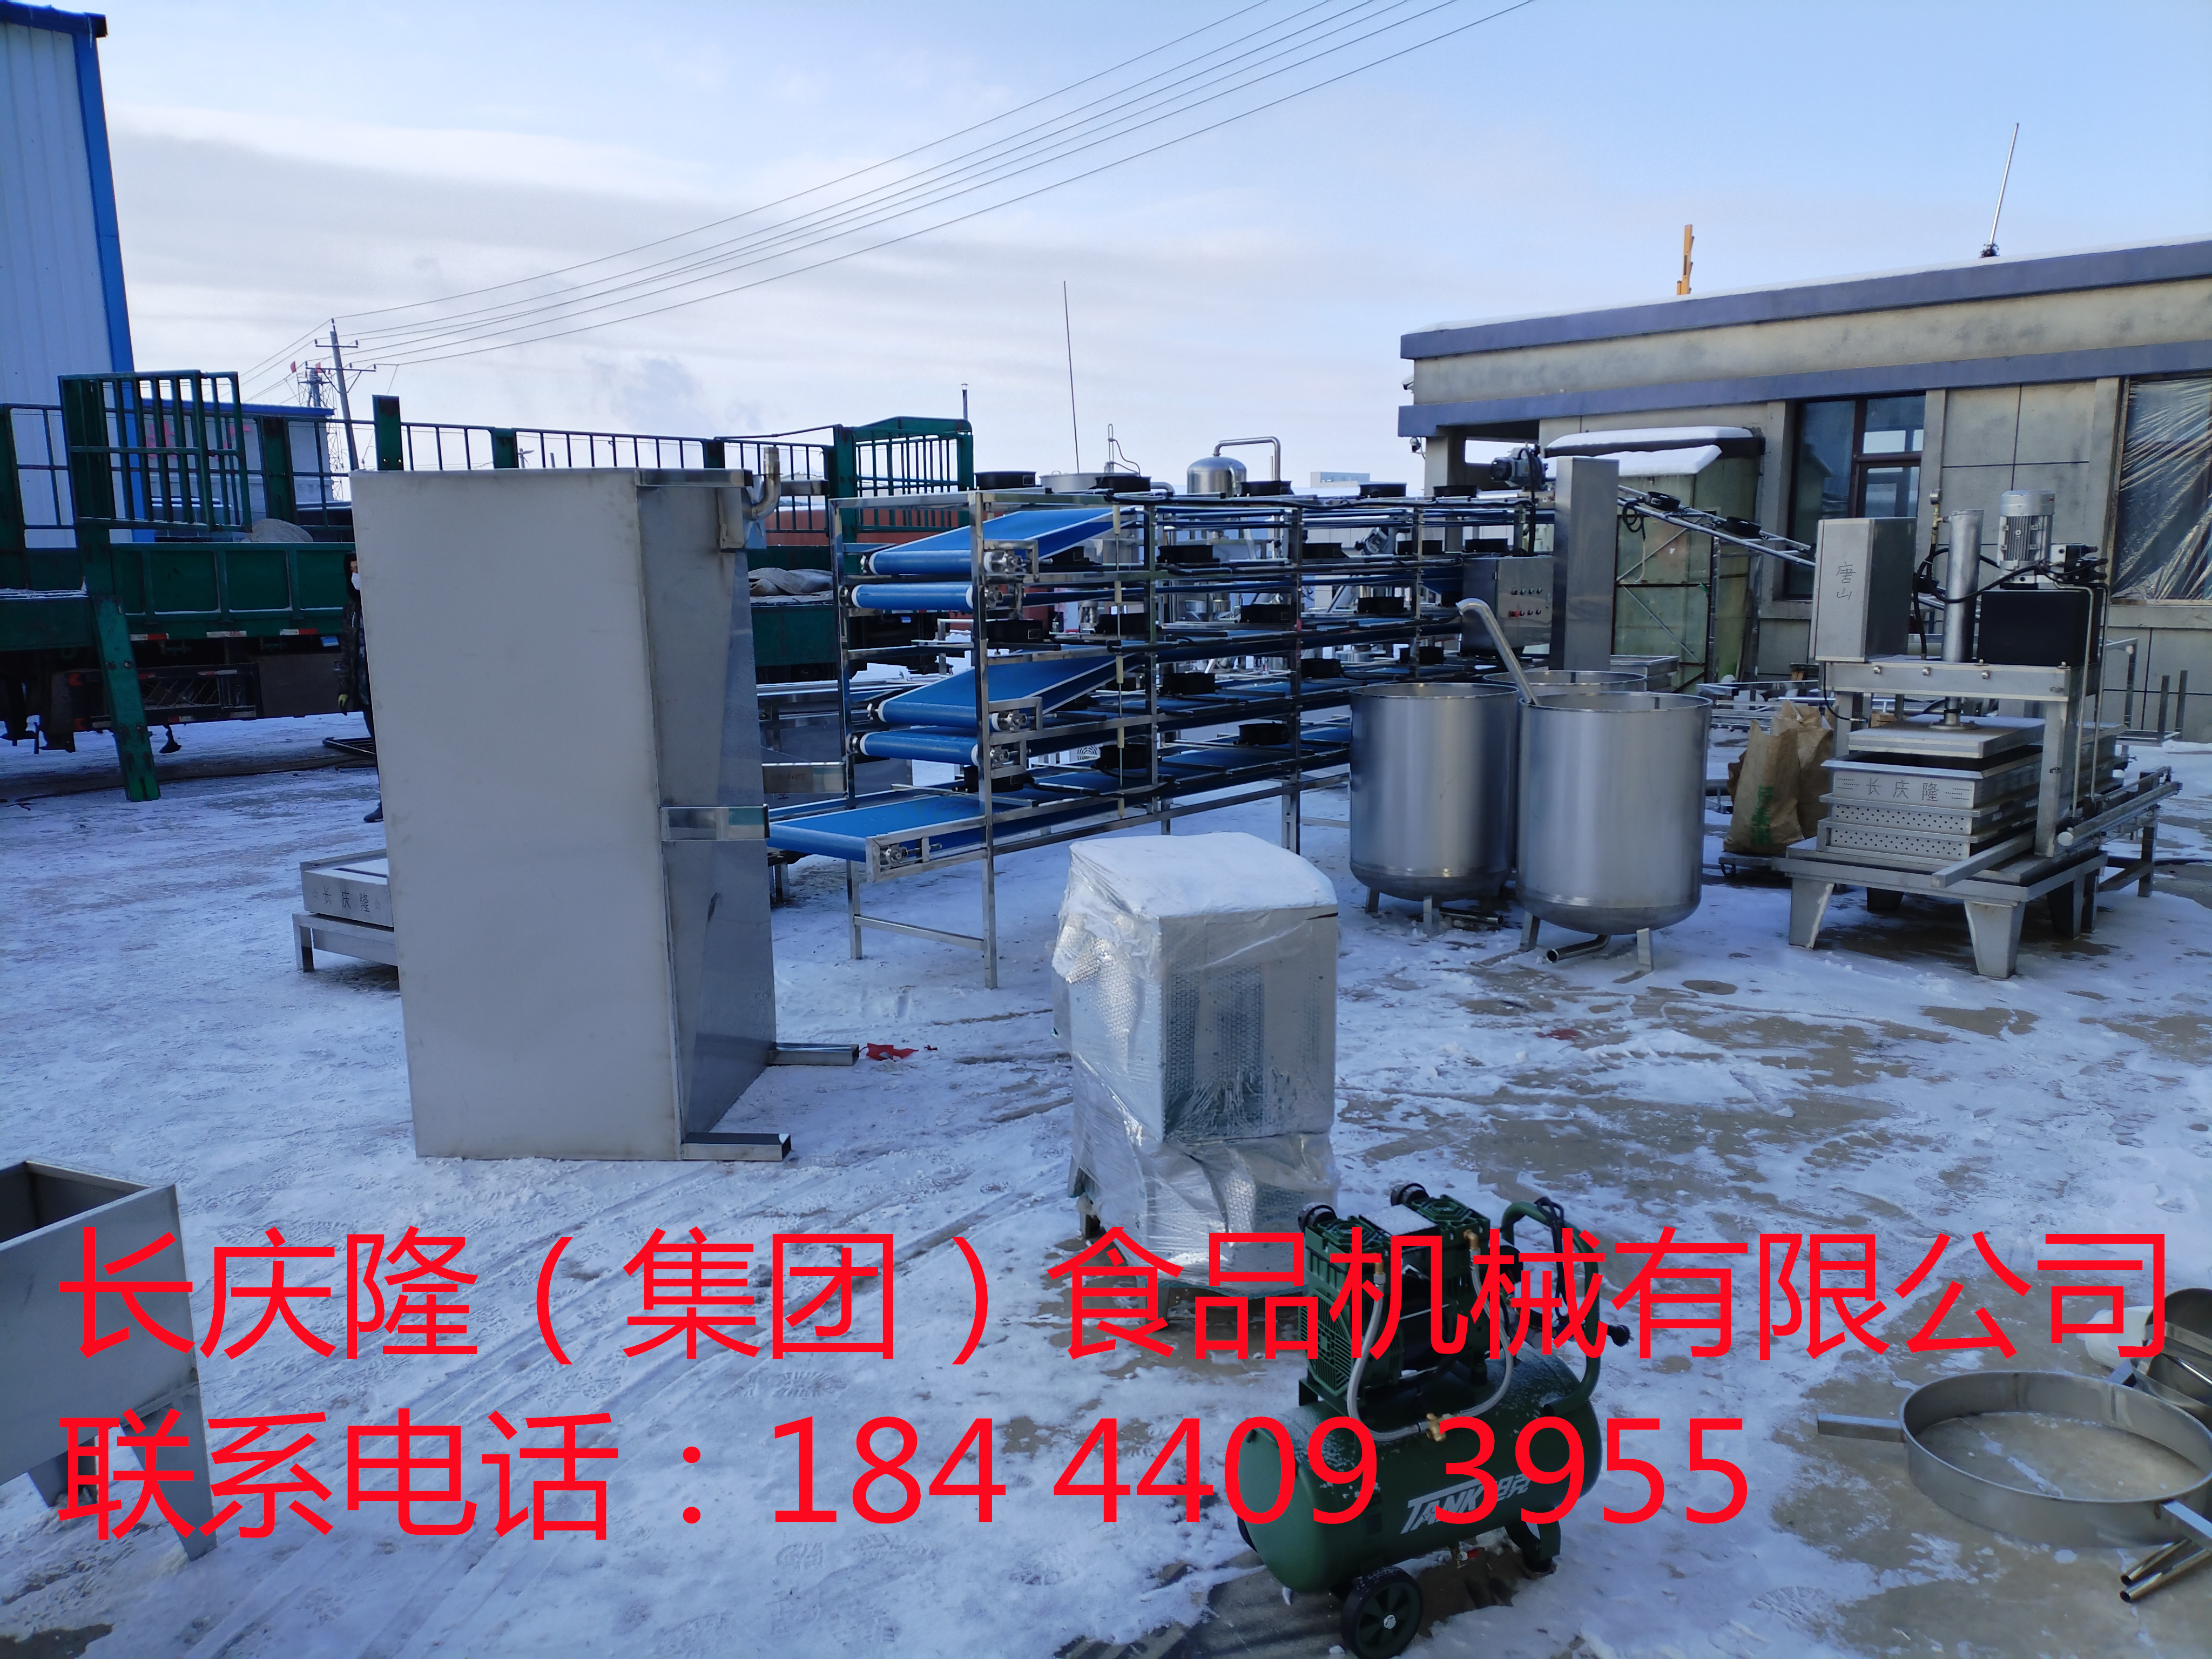 河北滦县客户订购的大型干豆腐机生产线马上装车 (2)_副本.jpg